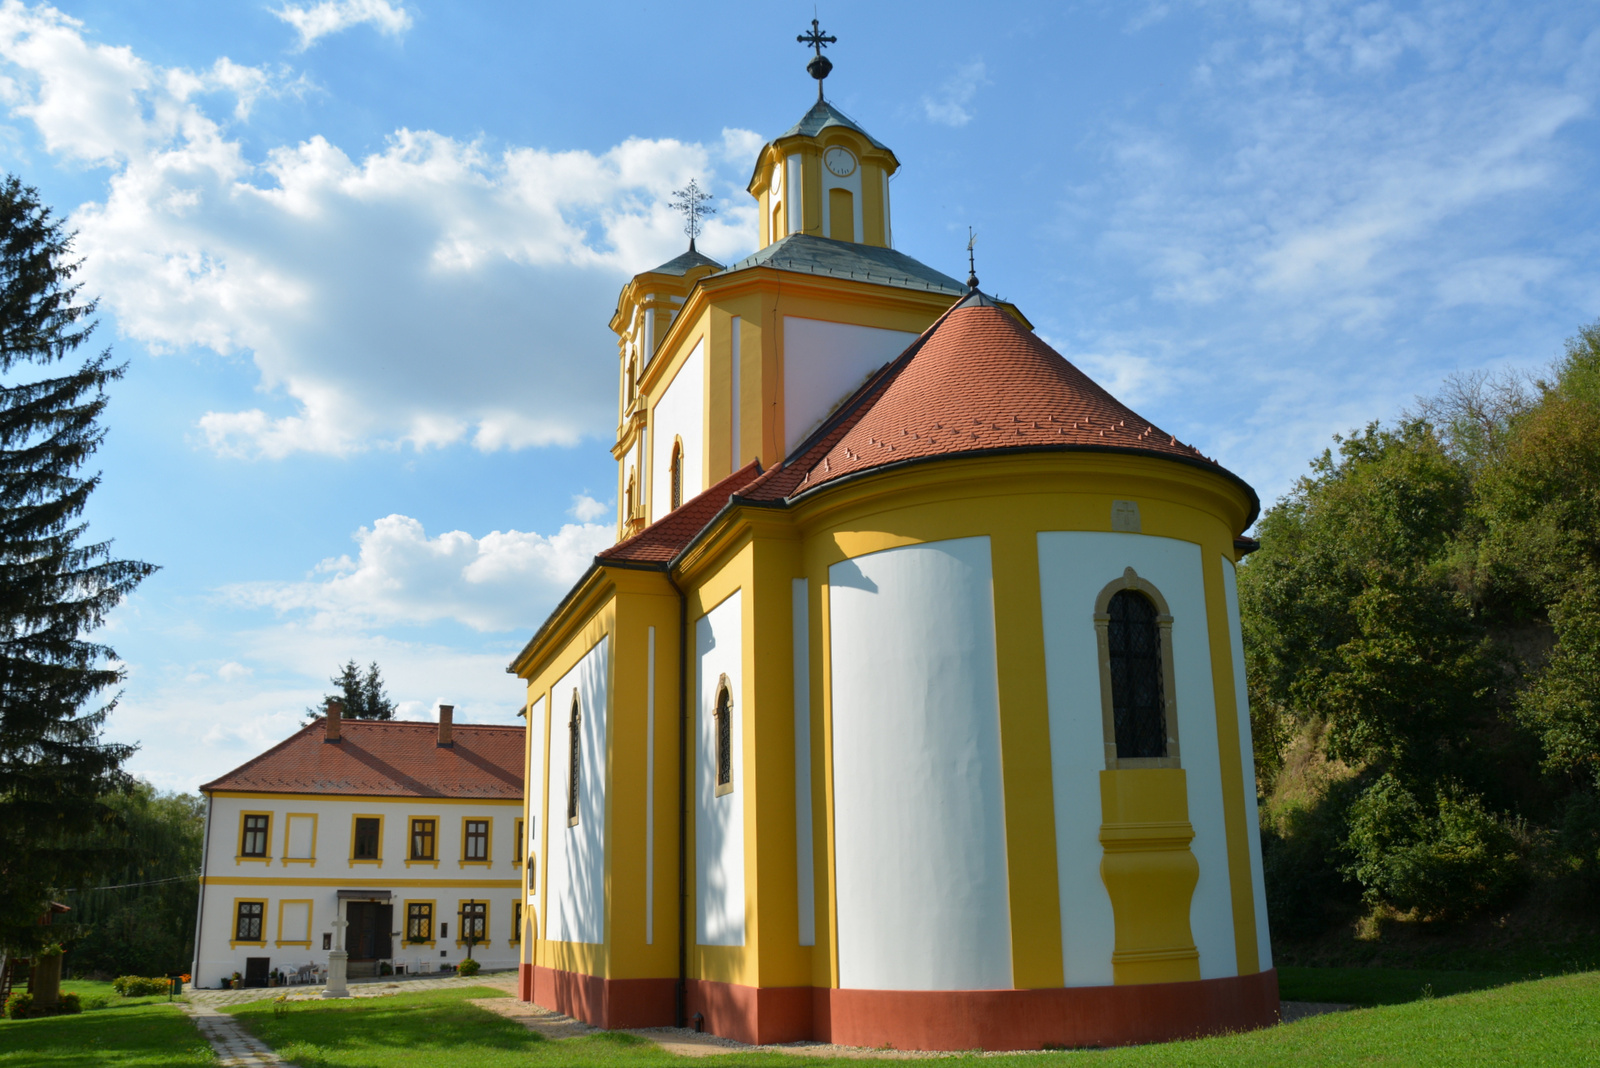 Szerb templom és kolostor